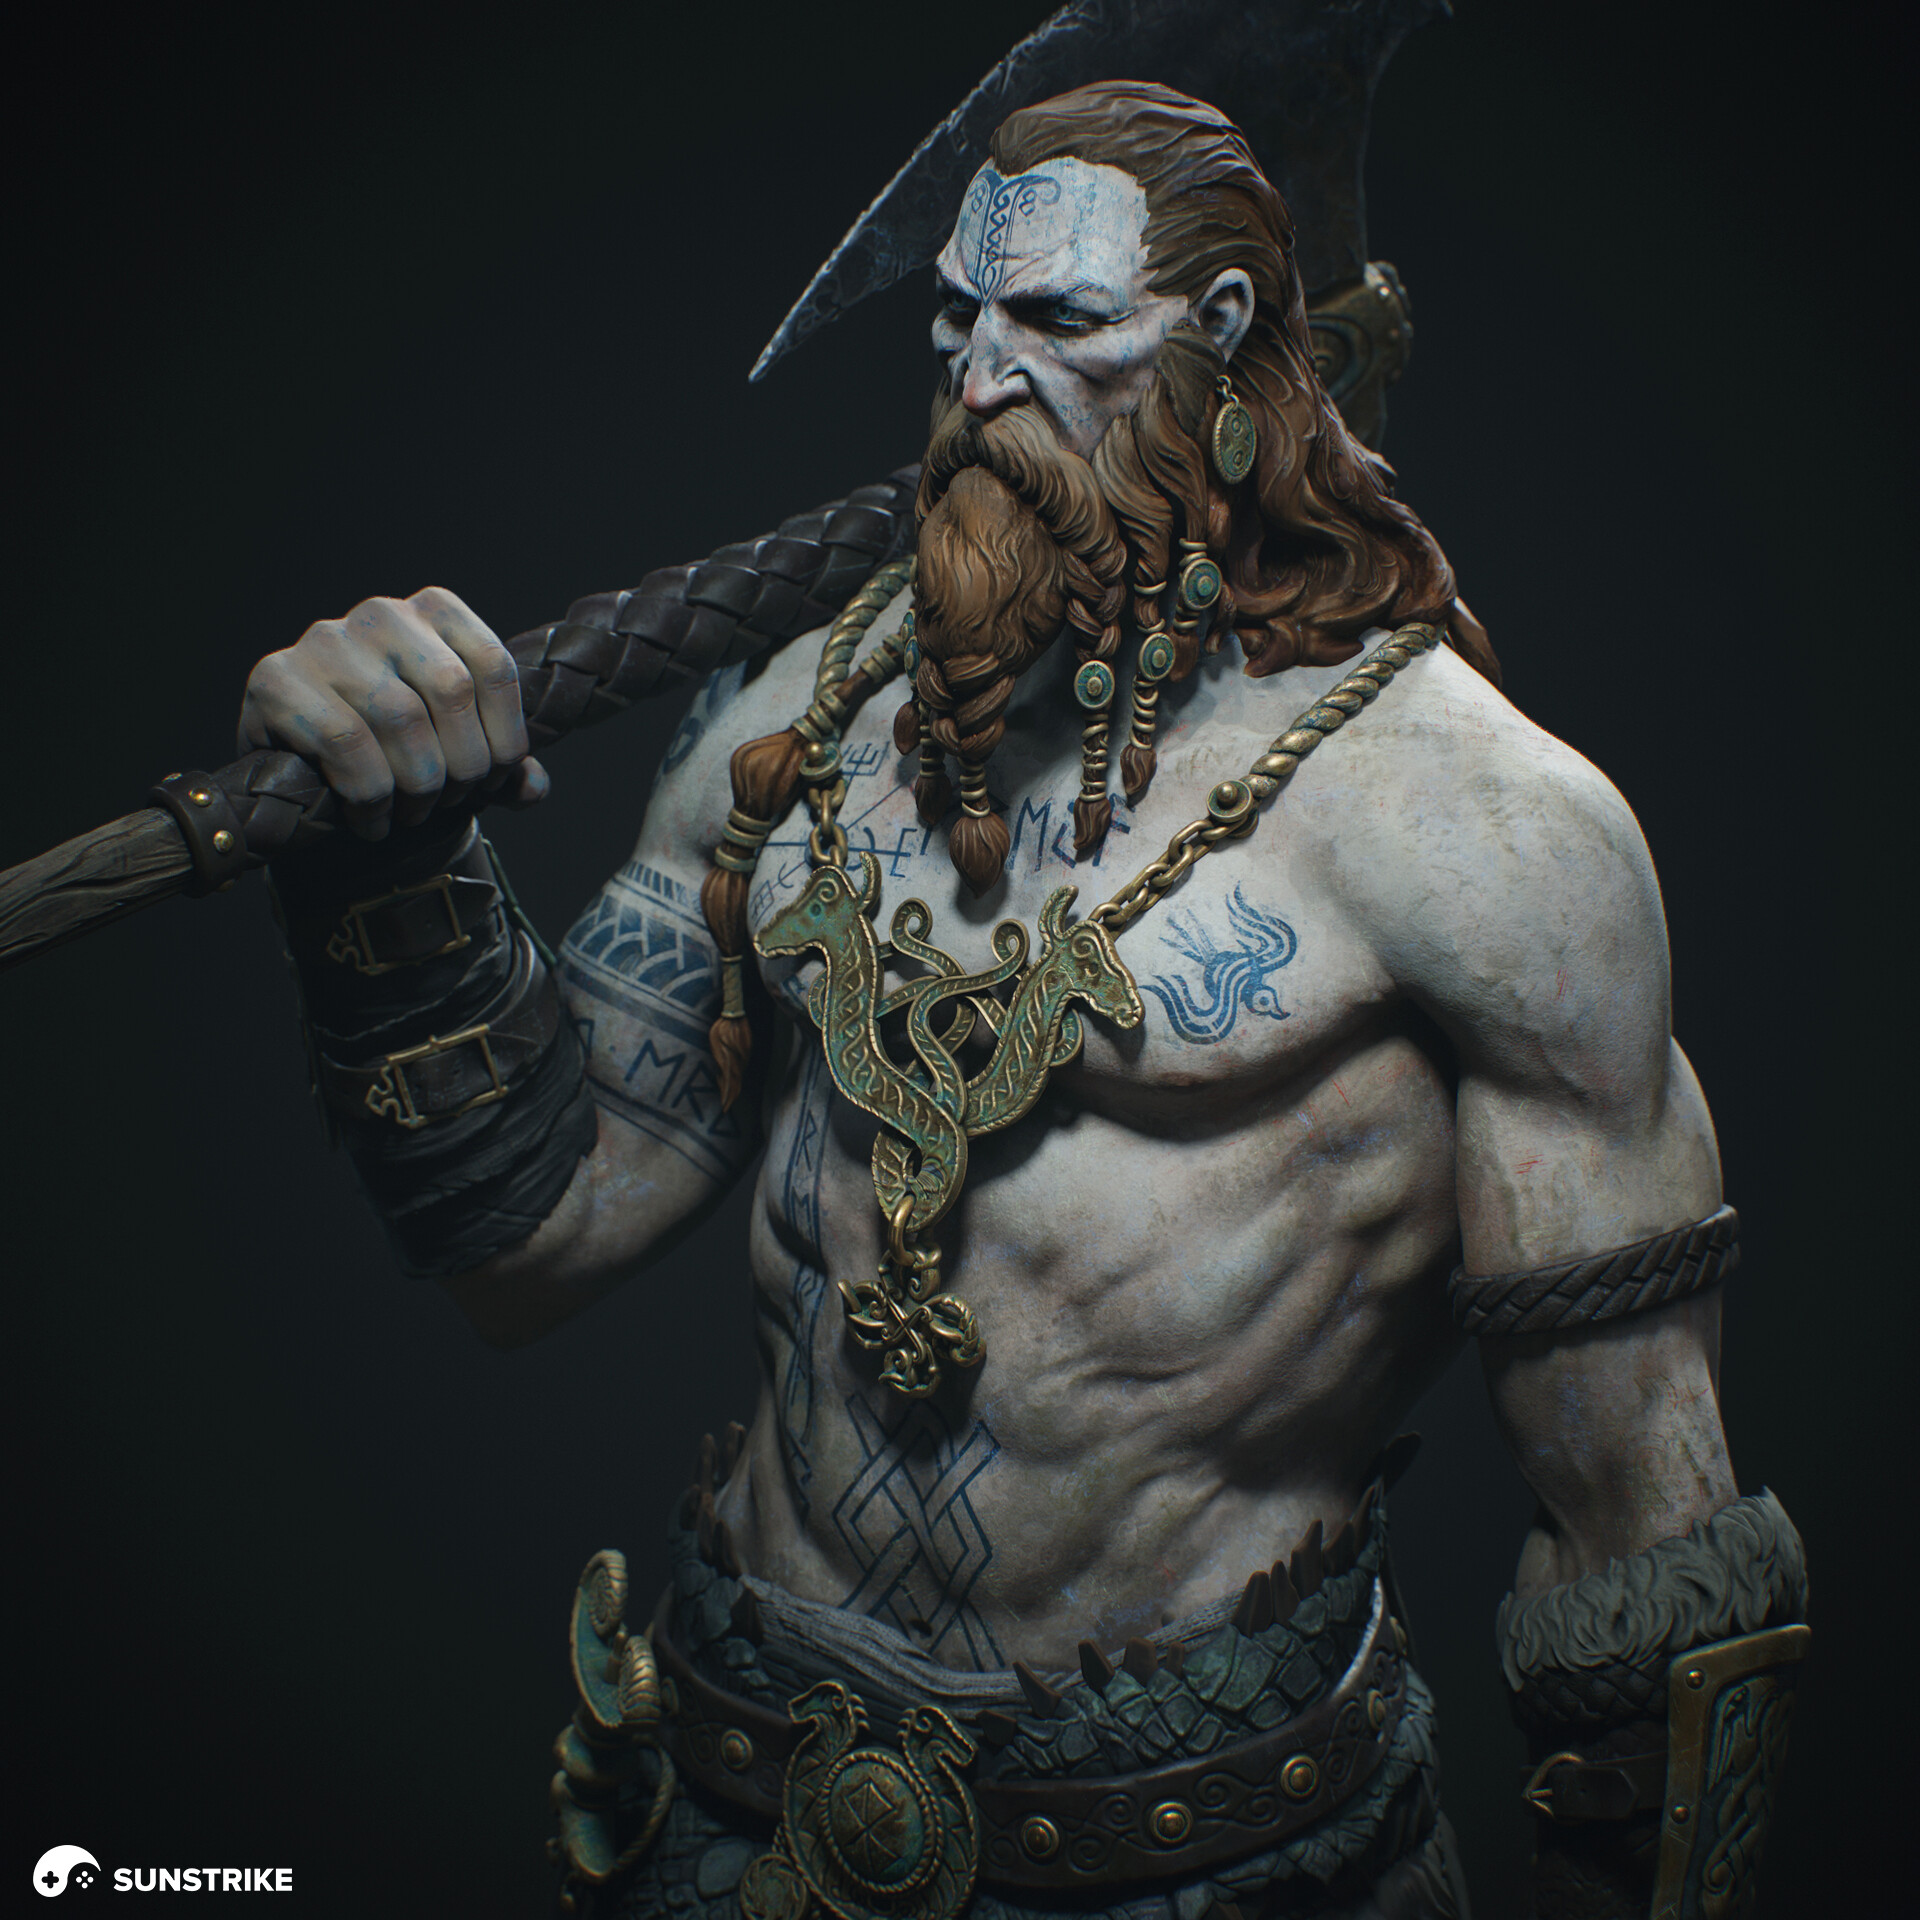 ArtStation - Celtic Warrior Chieftain